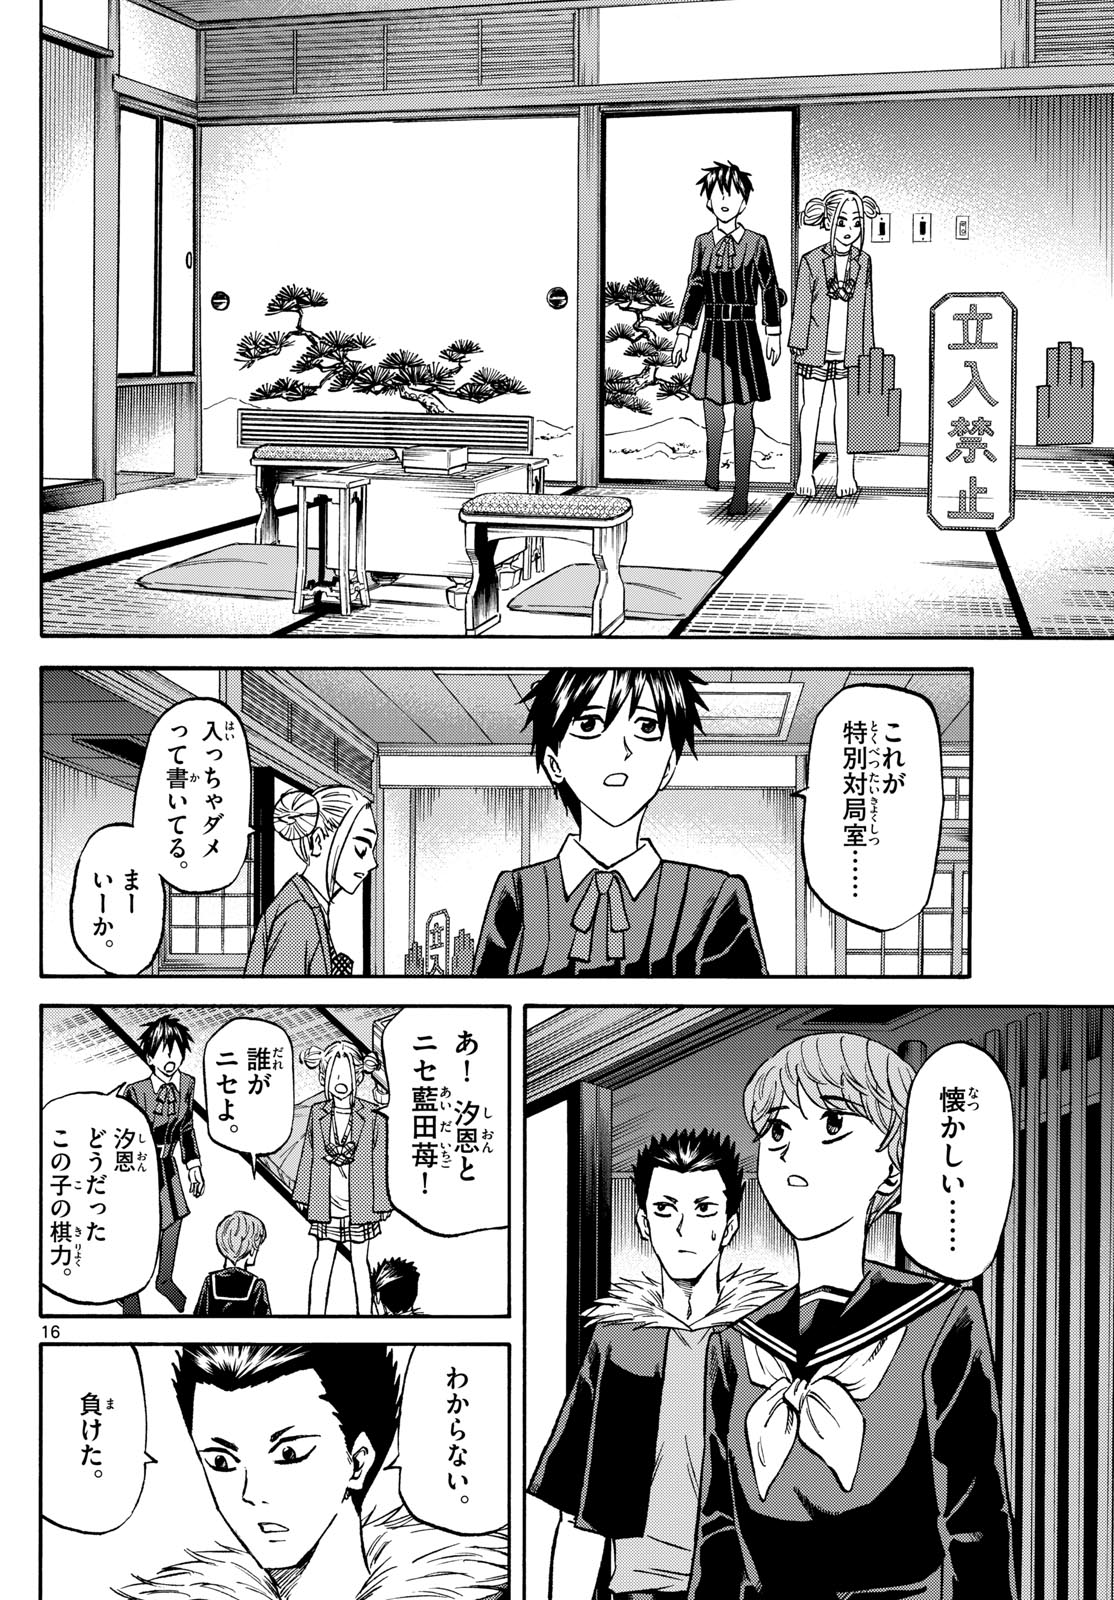 Tatsu to Ichigo - Chapter 183 - Page 16